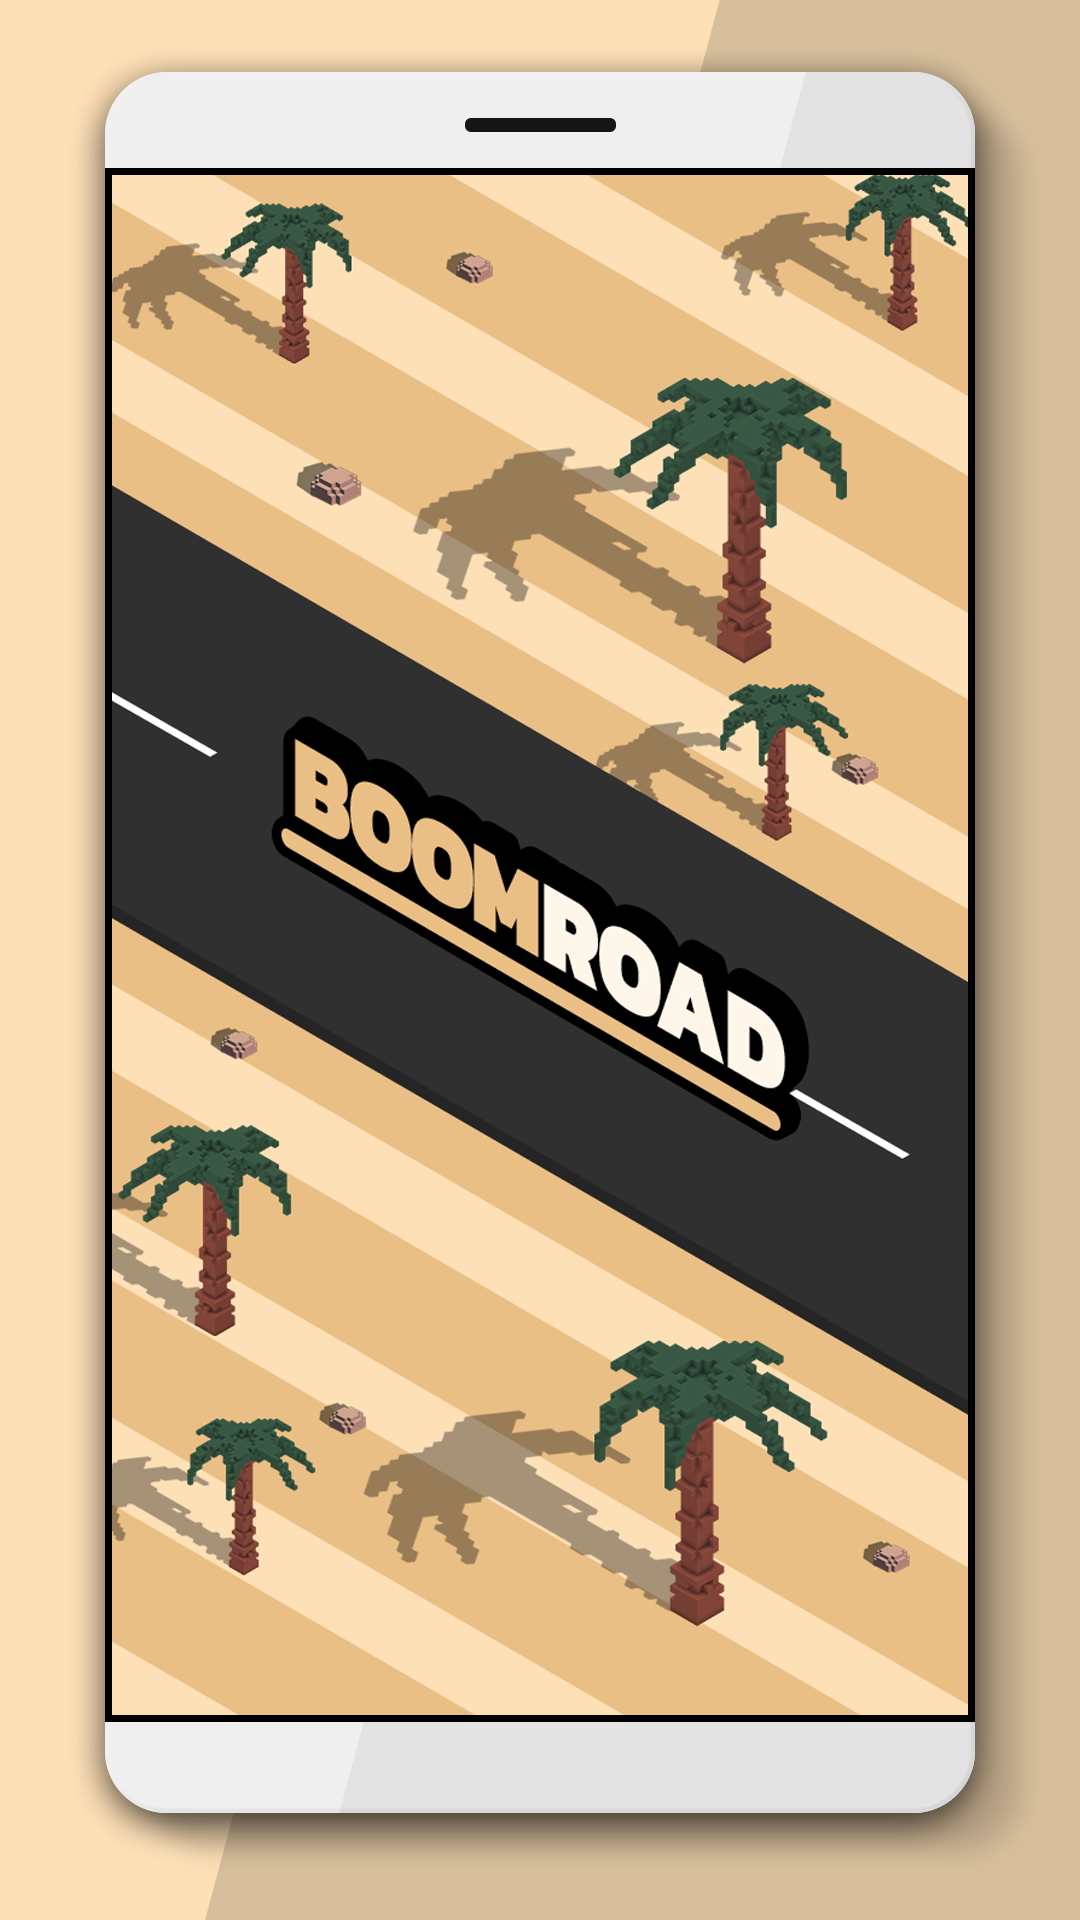 Screenshot 1 of Boom Road 3d mengemudi dan menembak 2.01